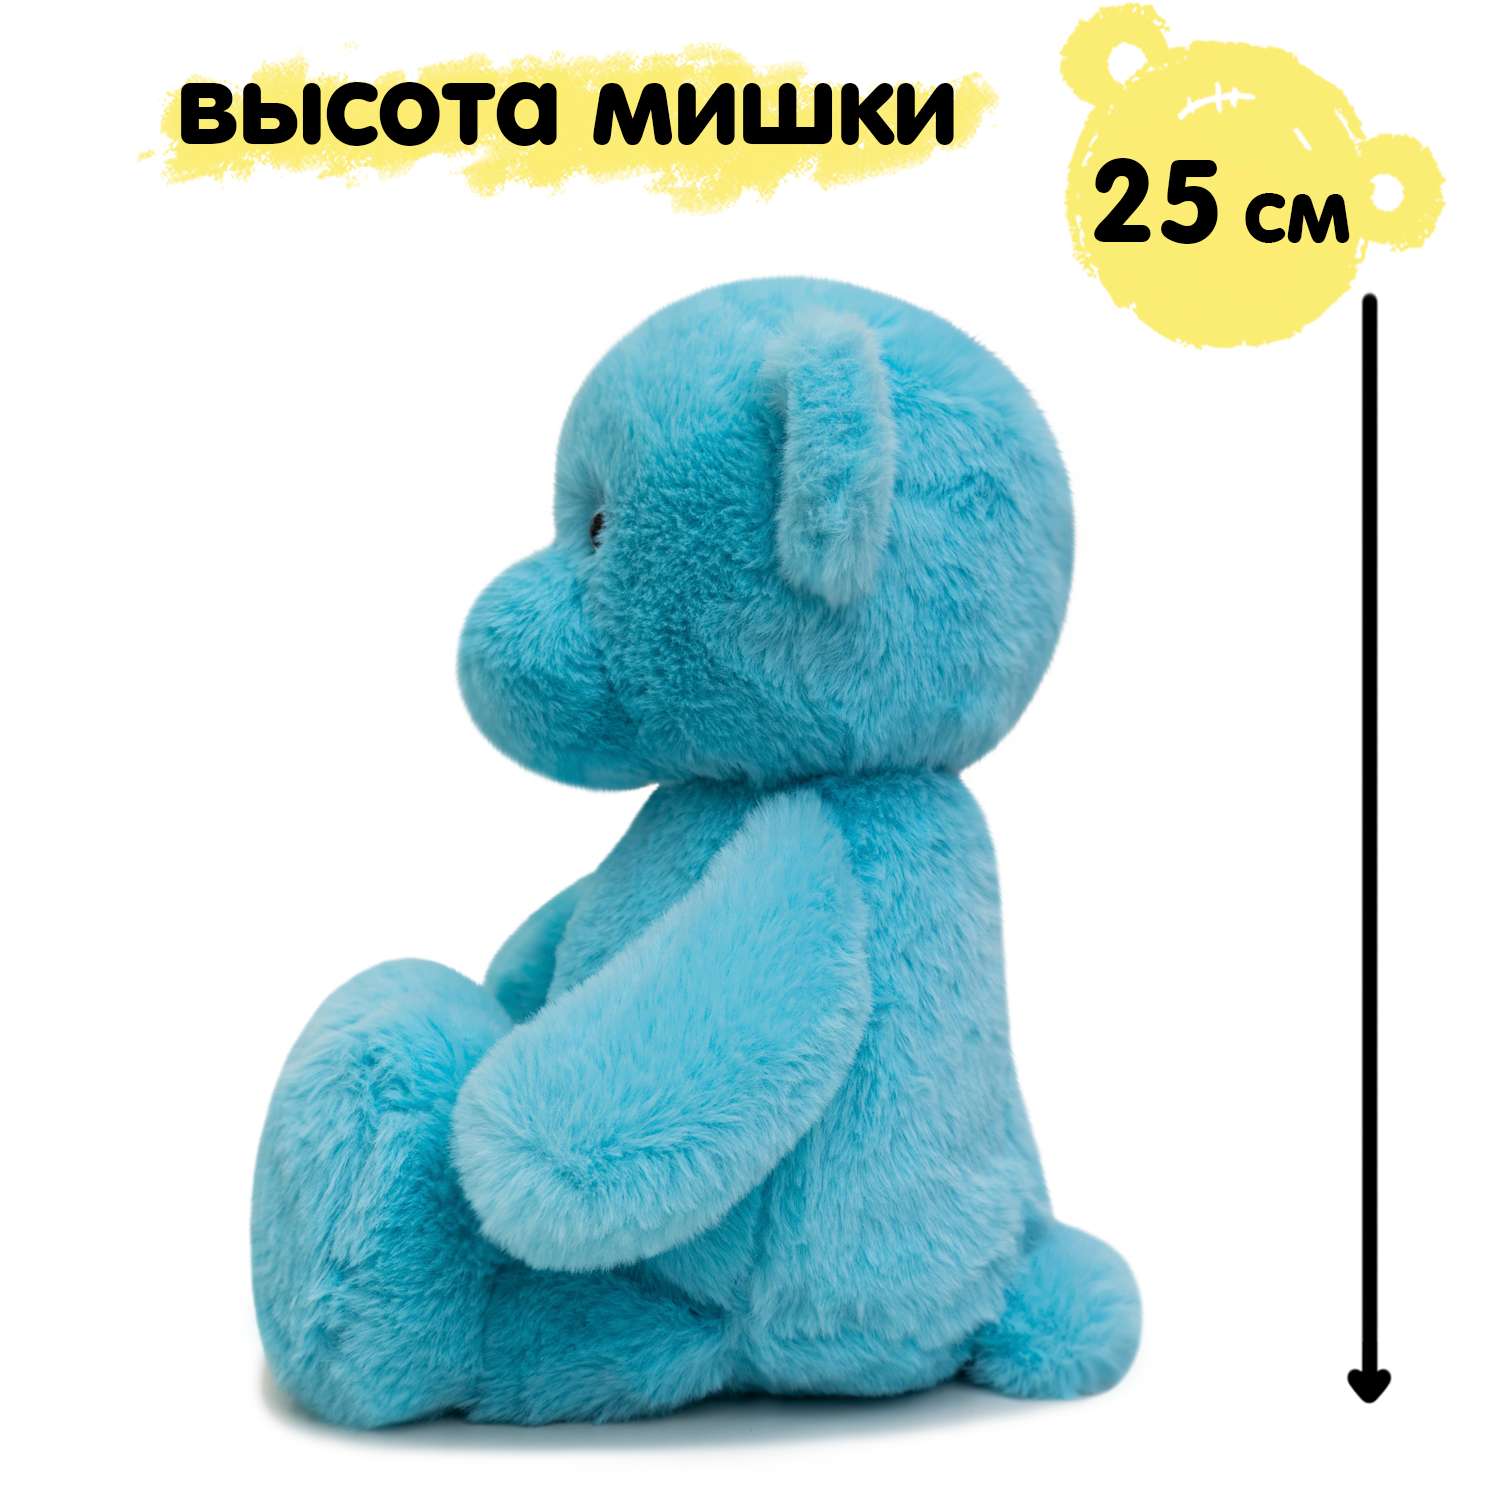 Мягкая игрушка KULT of toys Плюшевый мишка 35 см цвет бирюзовый - фото 3